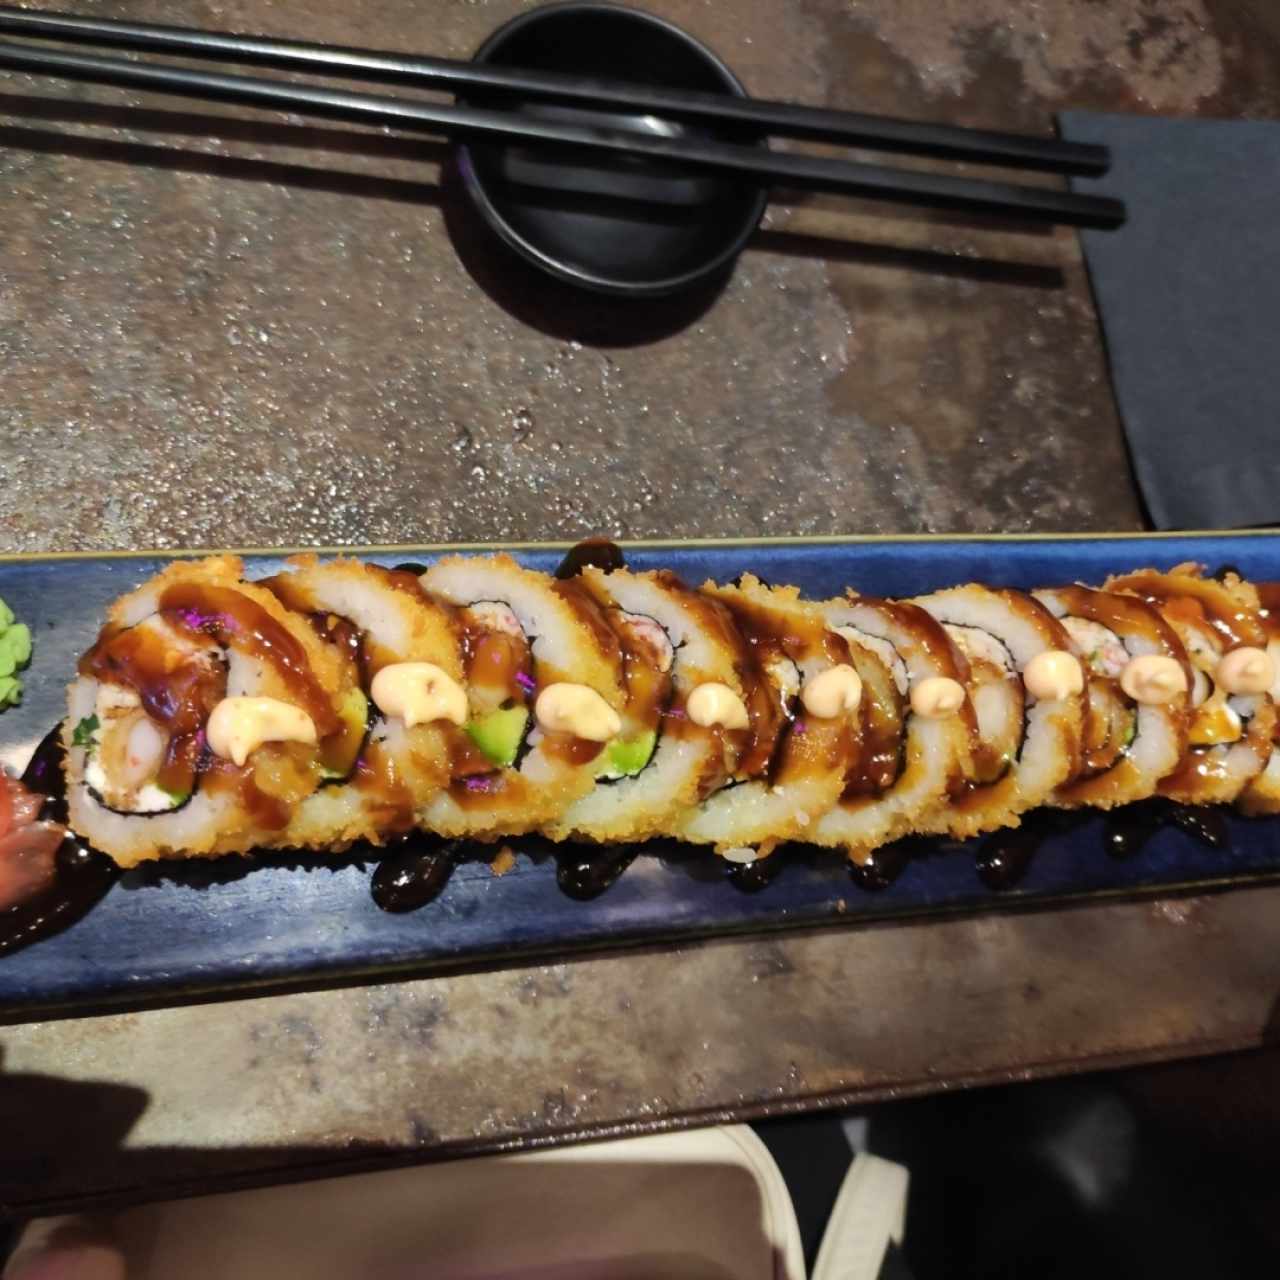 Sushi Rolls - Apanado Roll